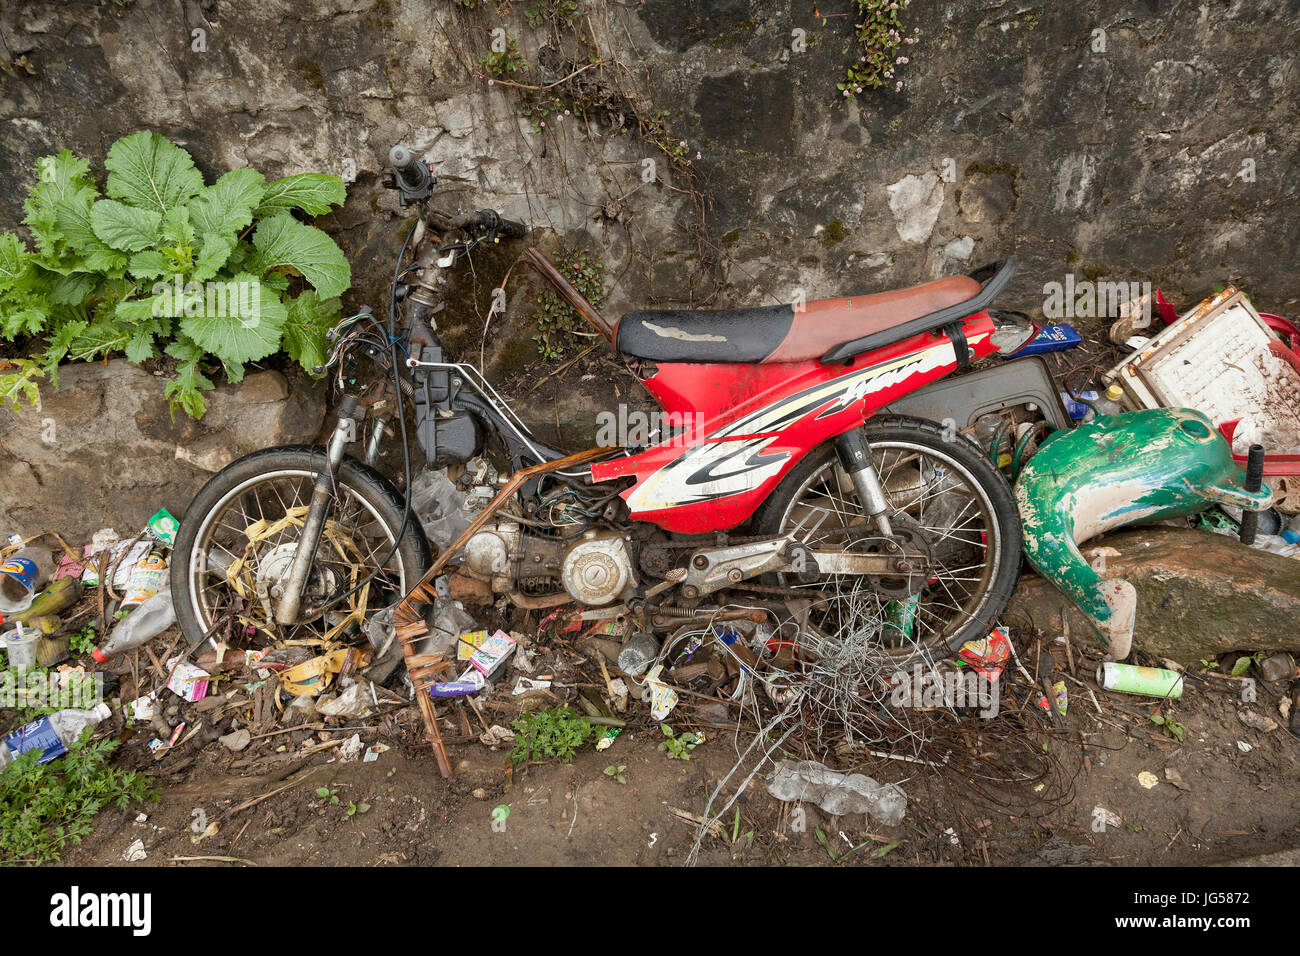 Basura incluyendo una antigua motocicleta descartados en una zanja en la carretera, Vietnam. Foto de stock